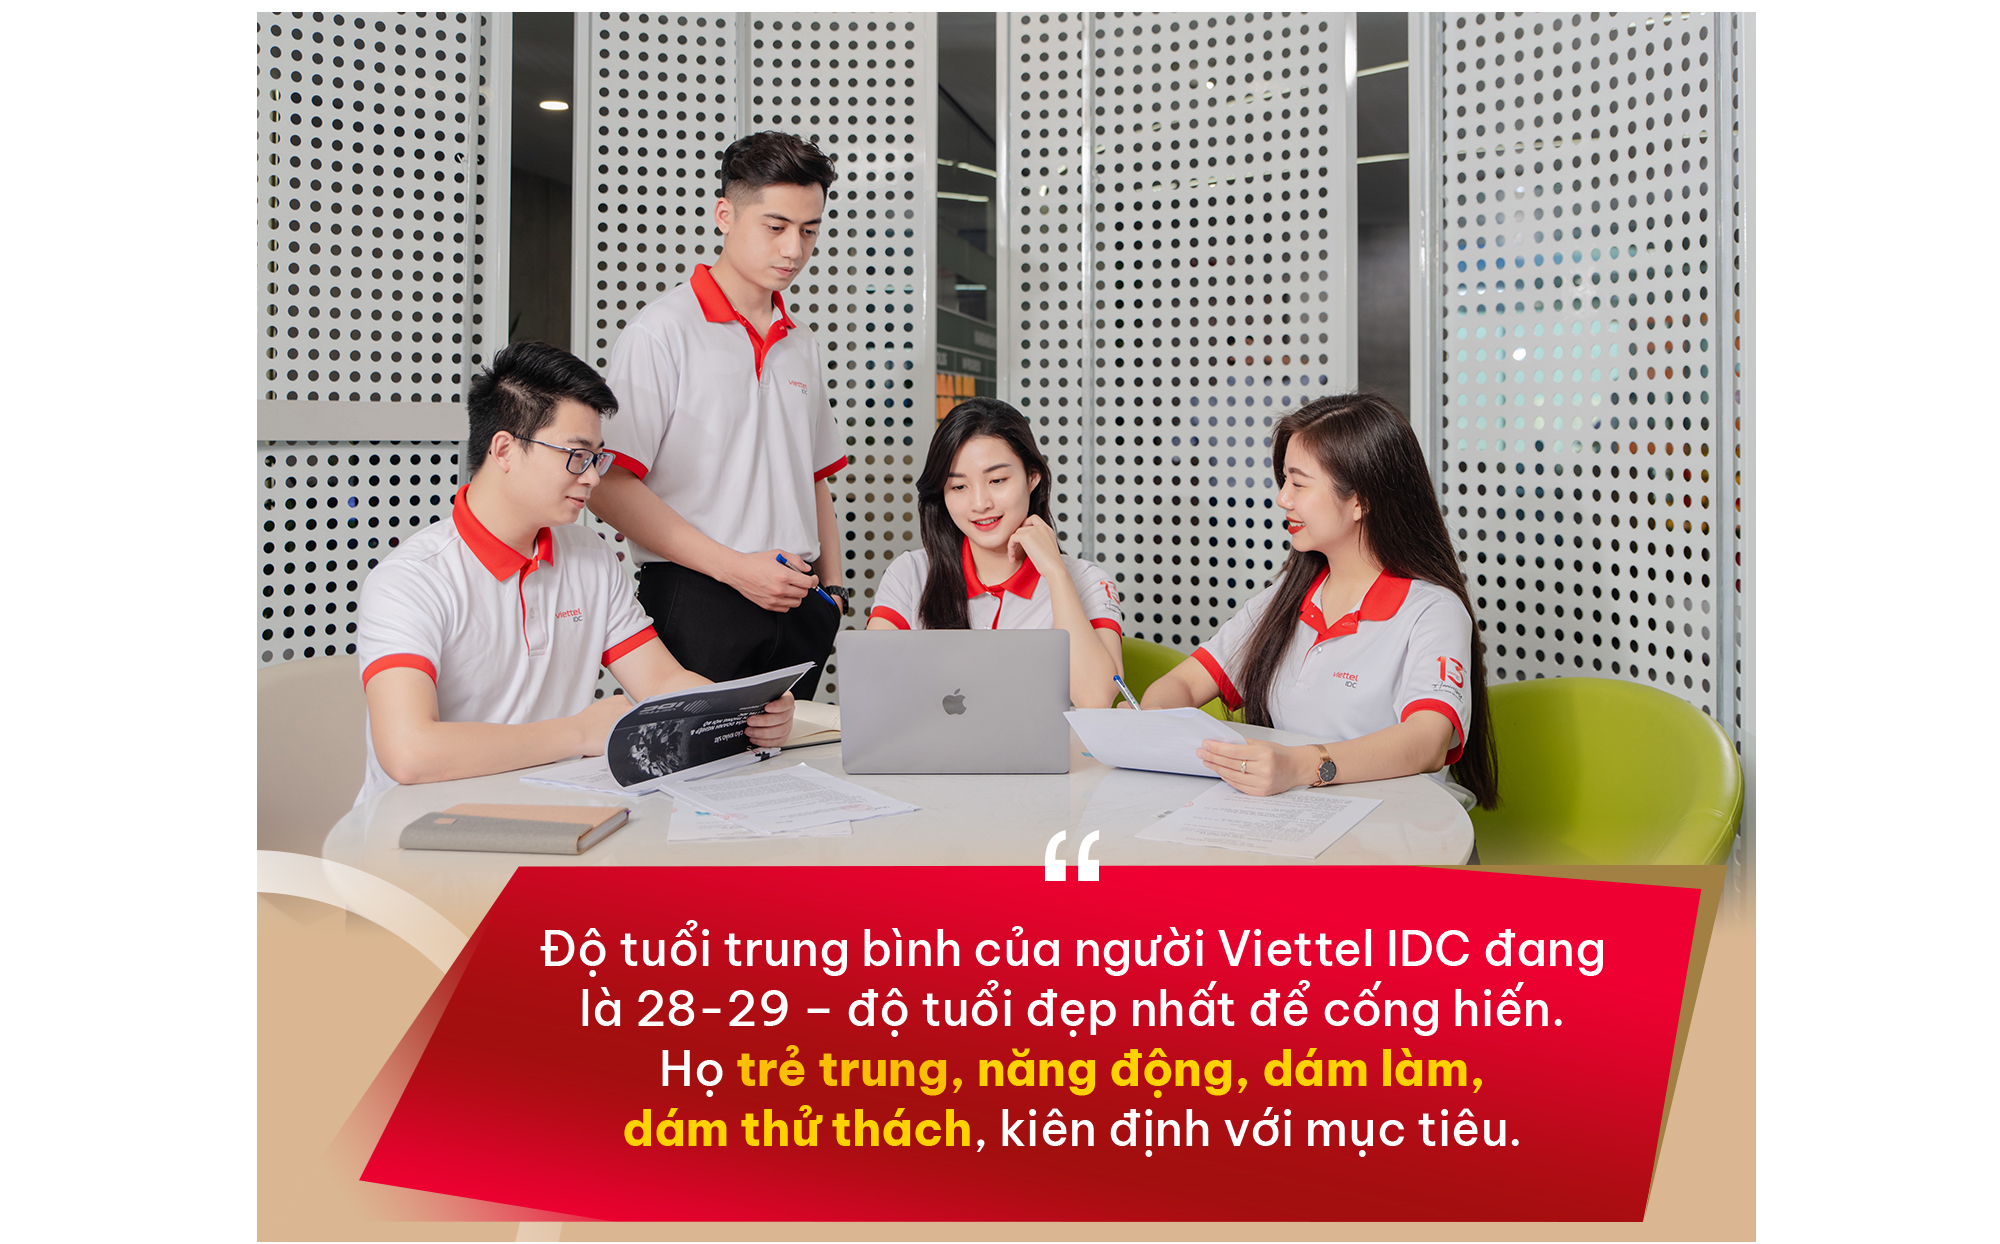 CEO Hoàng Văn Ngọc: Viettel IDC luôn nỗ lực trở thành phiên bản tốt nhất của chính mình - Ảnh 11.